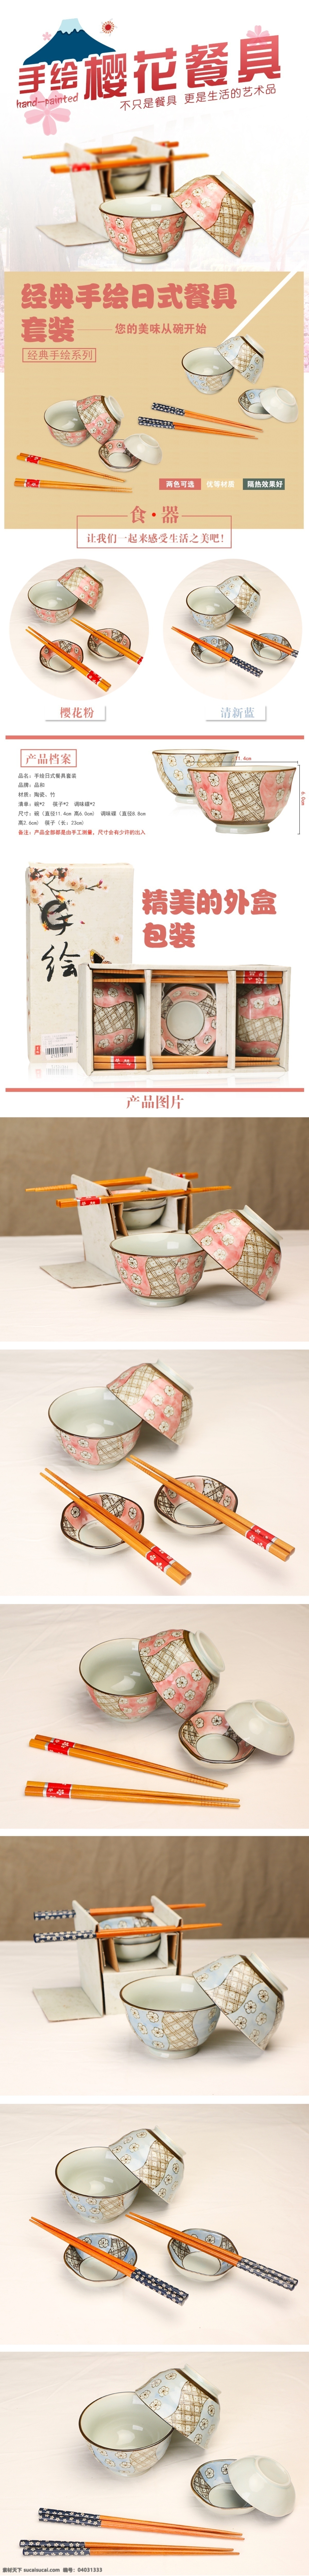 日式 碗筷 套装 详情 页 淘宝素材 淘宝设计 淘宝模板下载 白色